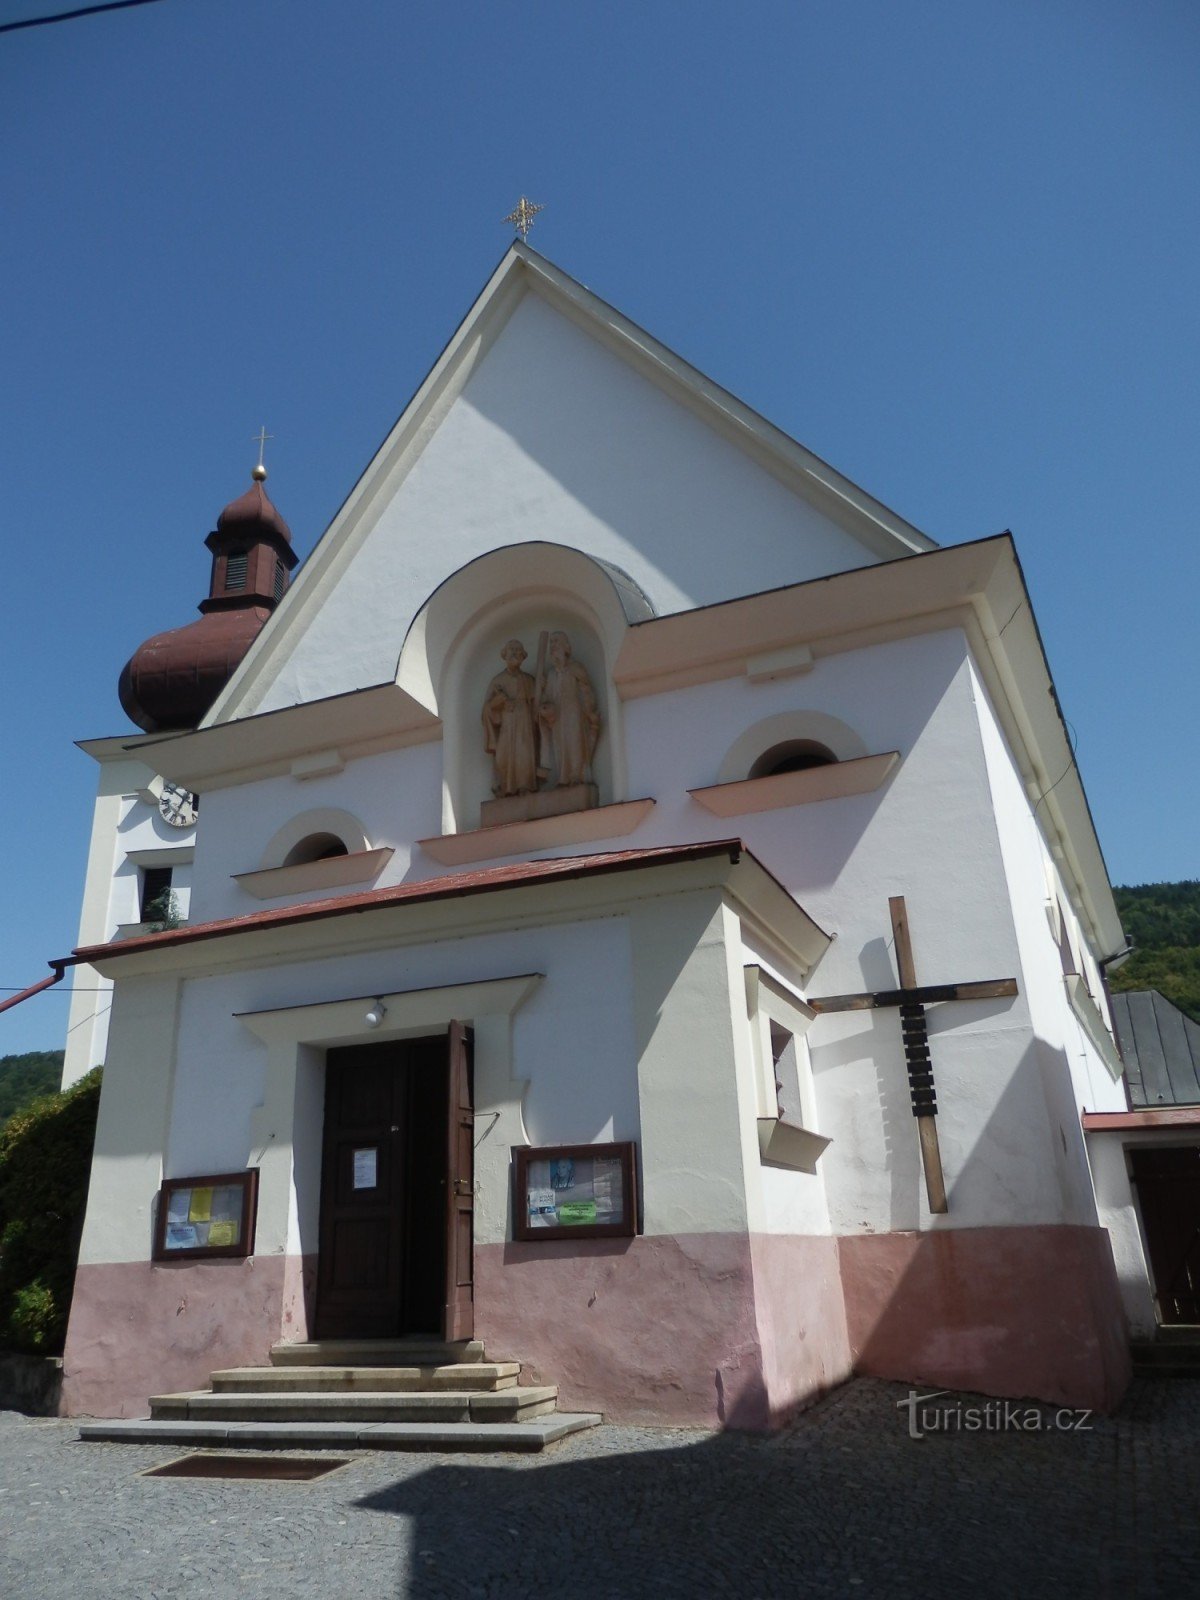 templom Szent Péter és Pál Štěpánov nad Svratkouban